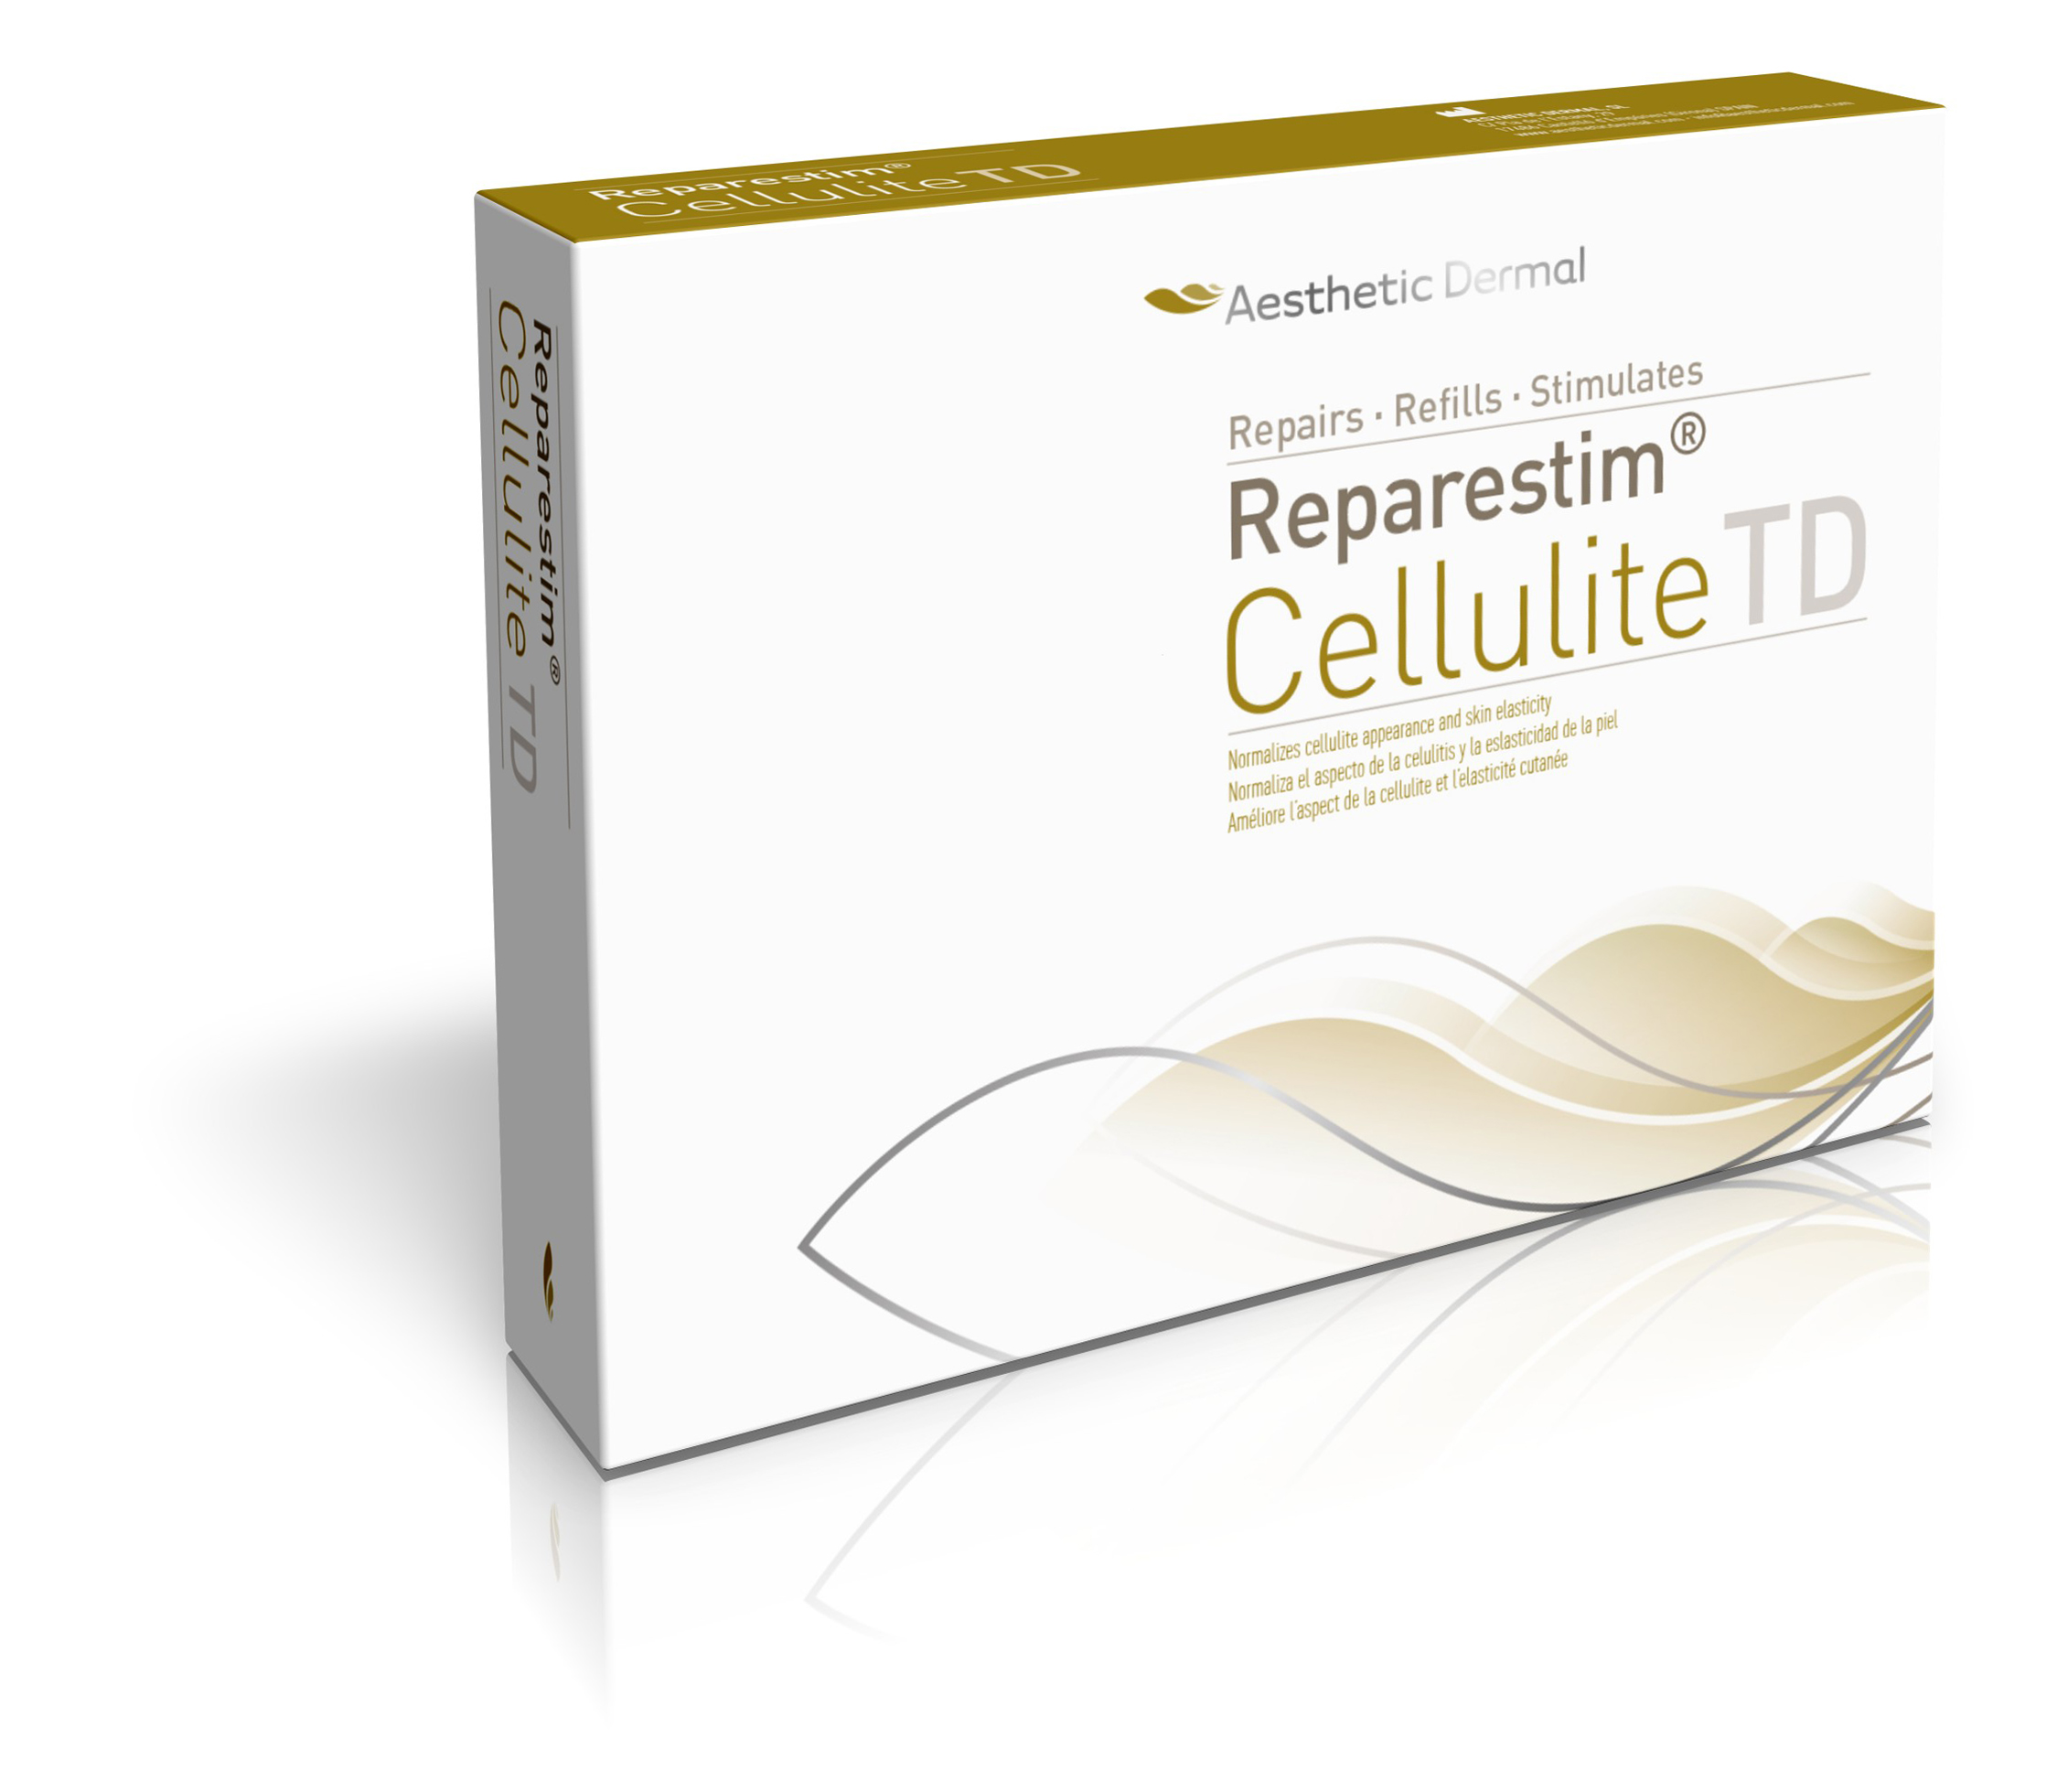 Aesthetic Dermal - ReparestimTD Cellulite